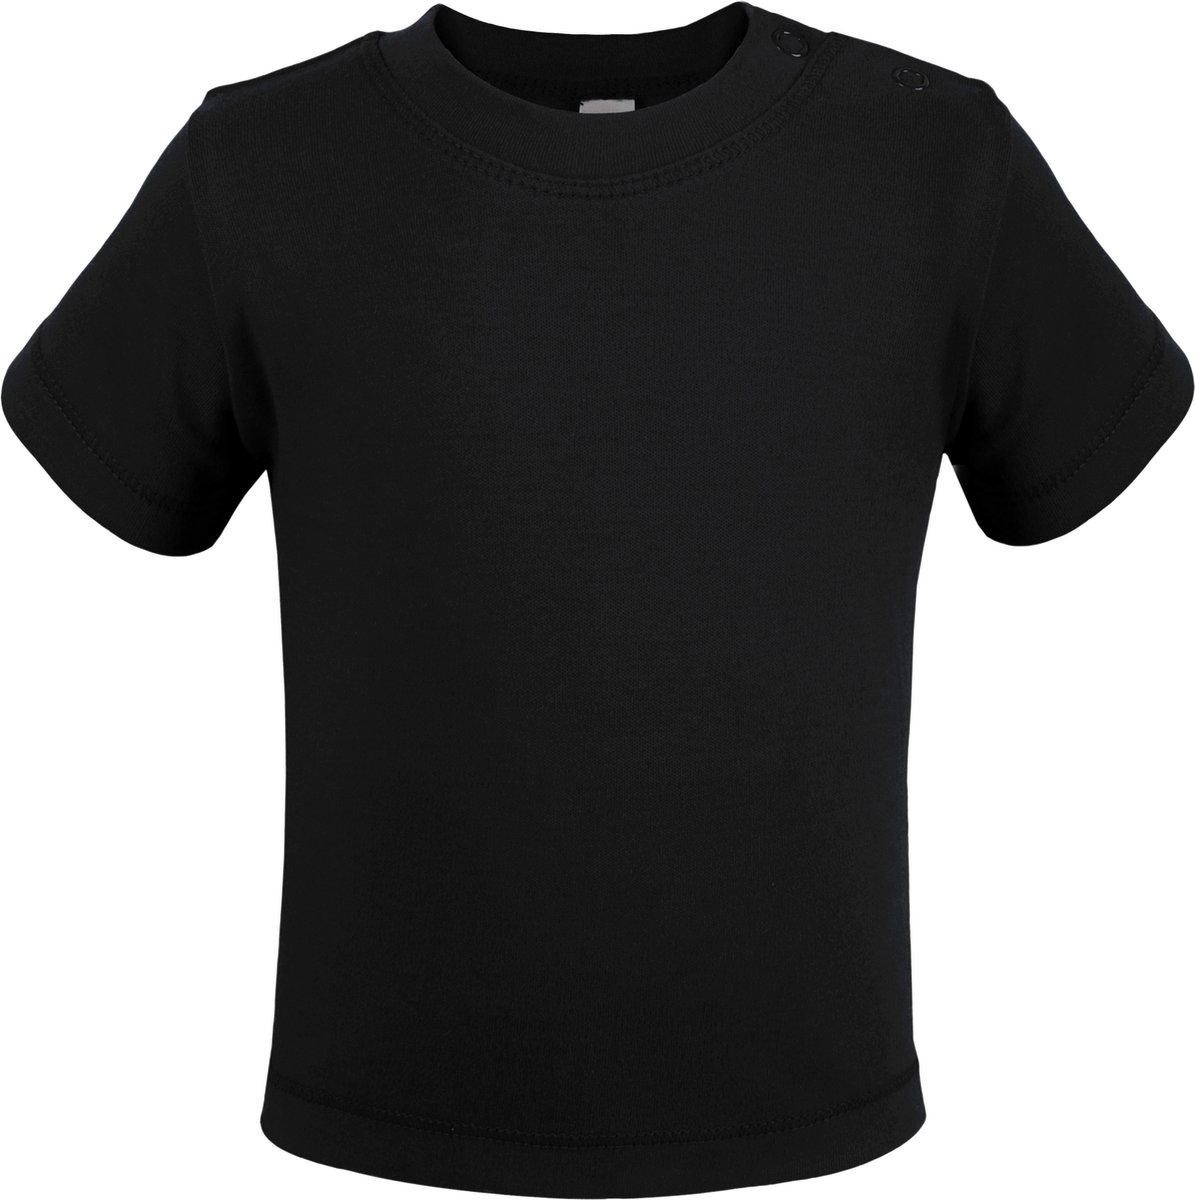 Kleding Unisex kinderkleding Tops & T-shirts T-shirts Kids Basic Ronde Hals T-Shirt Tops Kinderen Lange Mouw Stretchy Top 